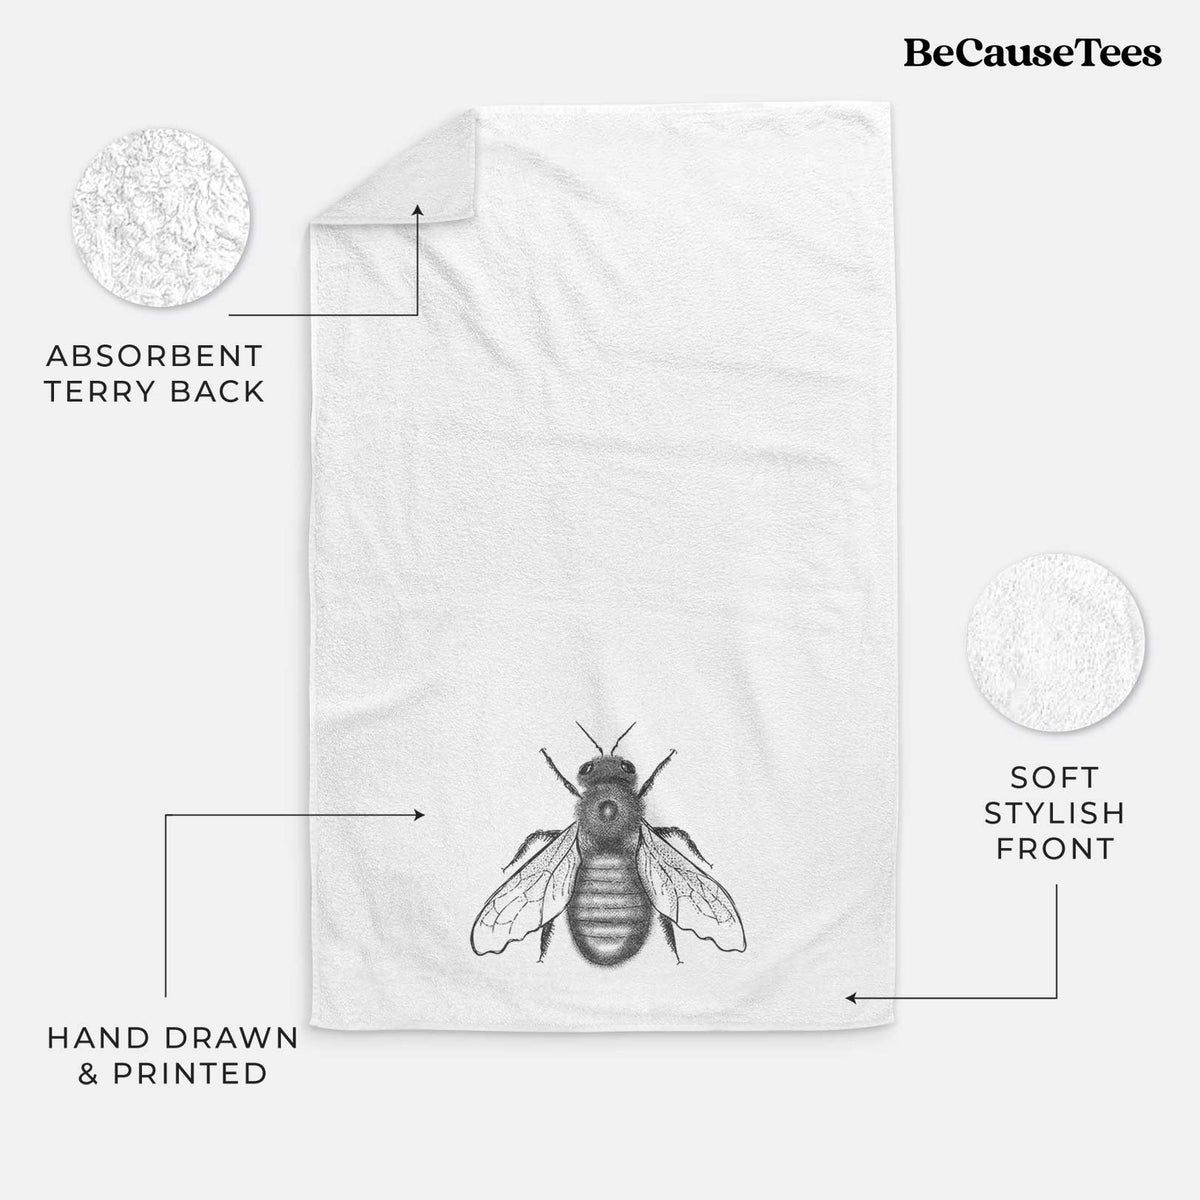 Xylocopa Virginica - Carpenter Bee Hand Towel